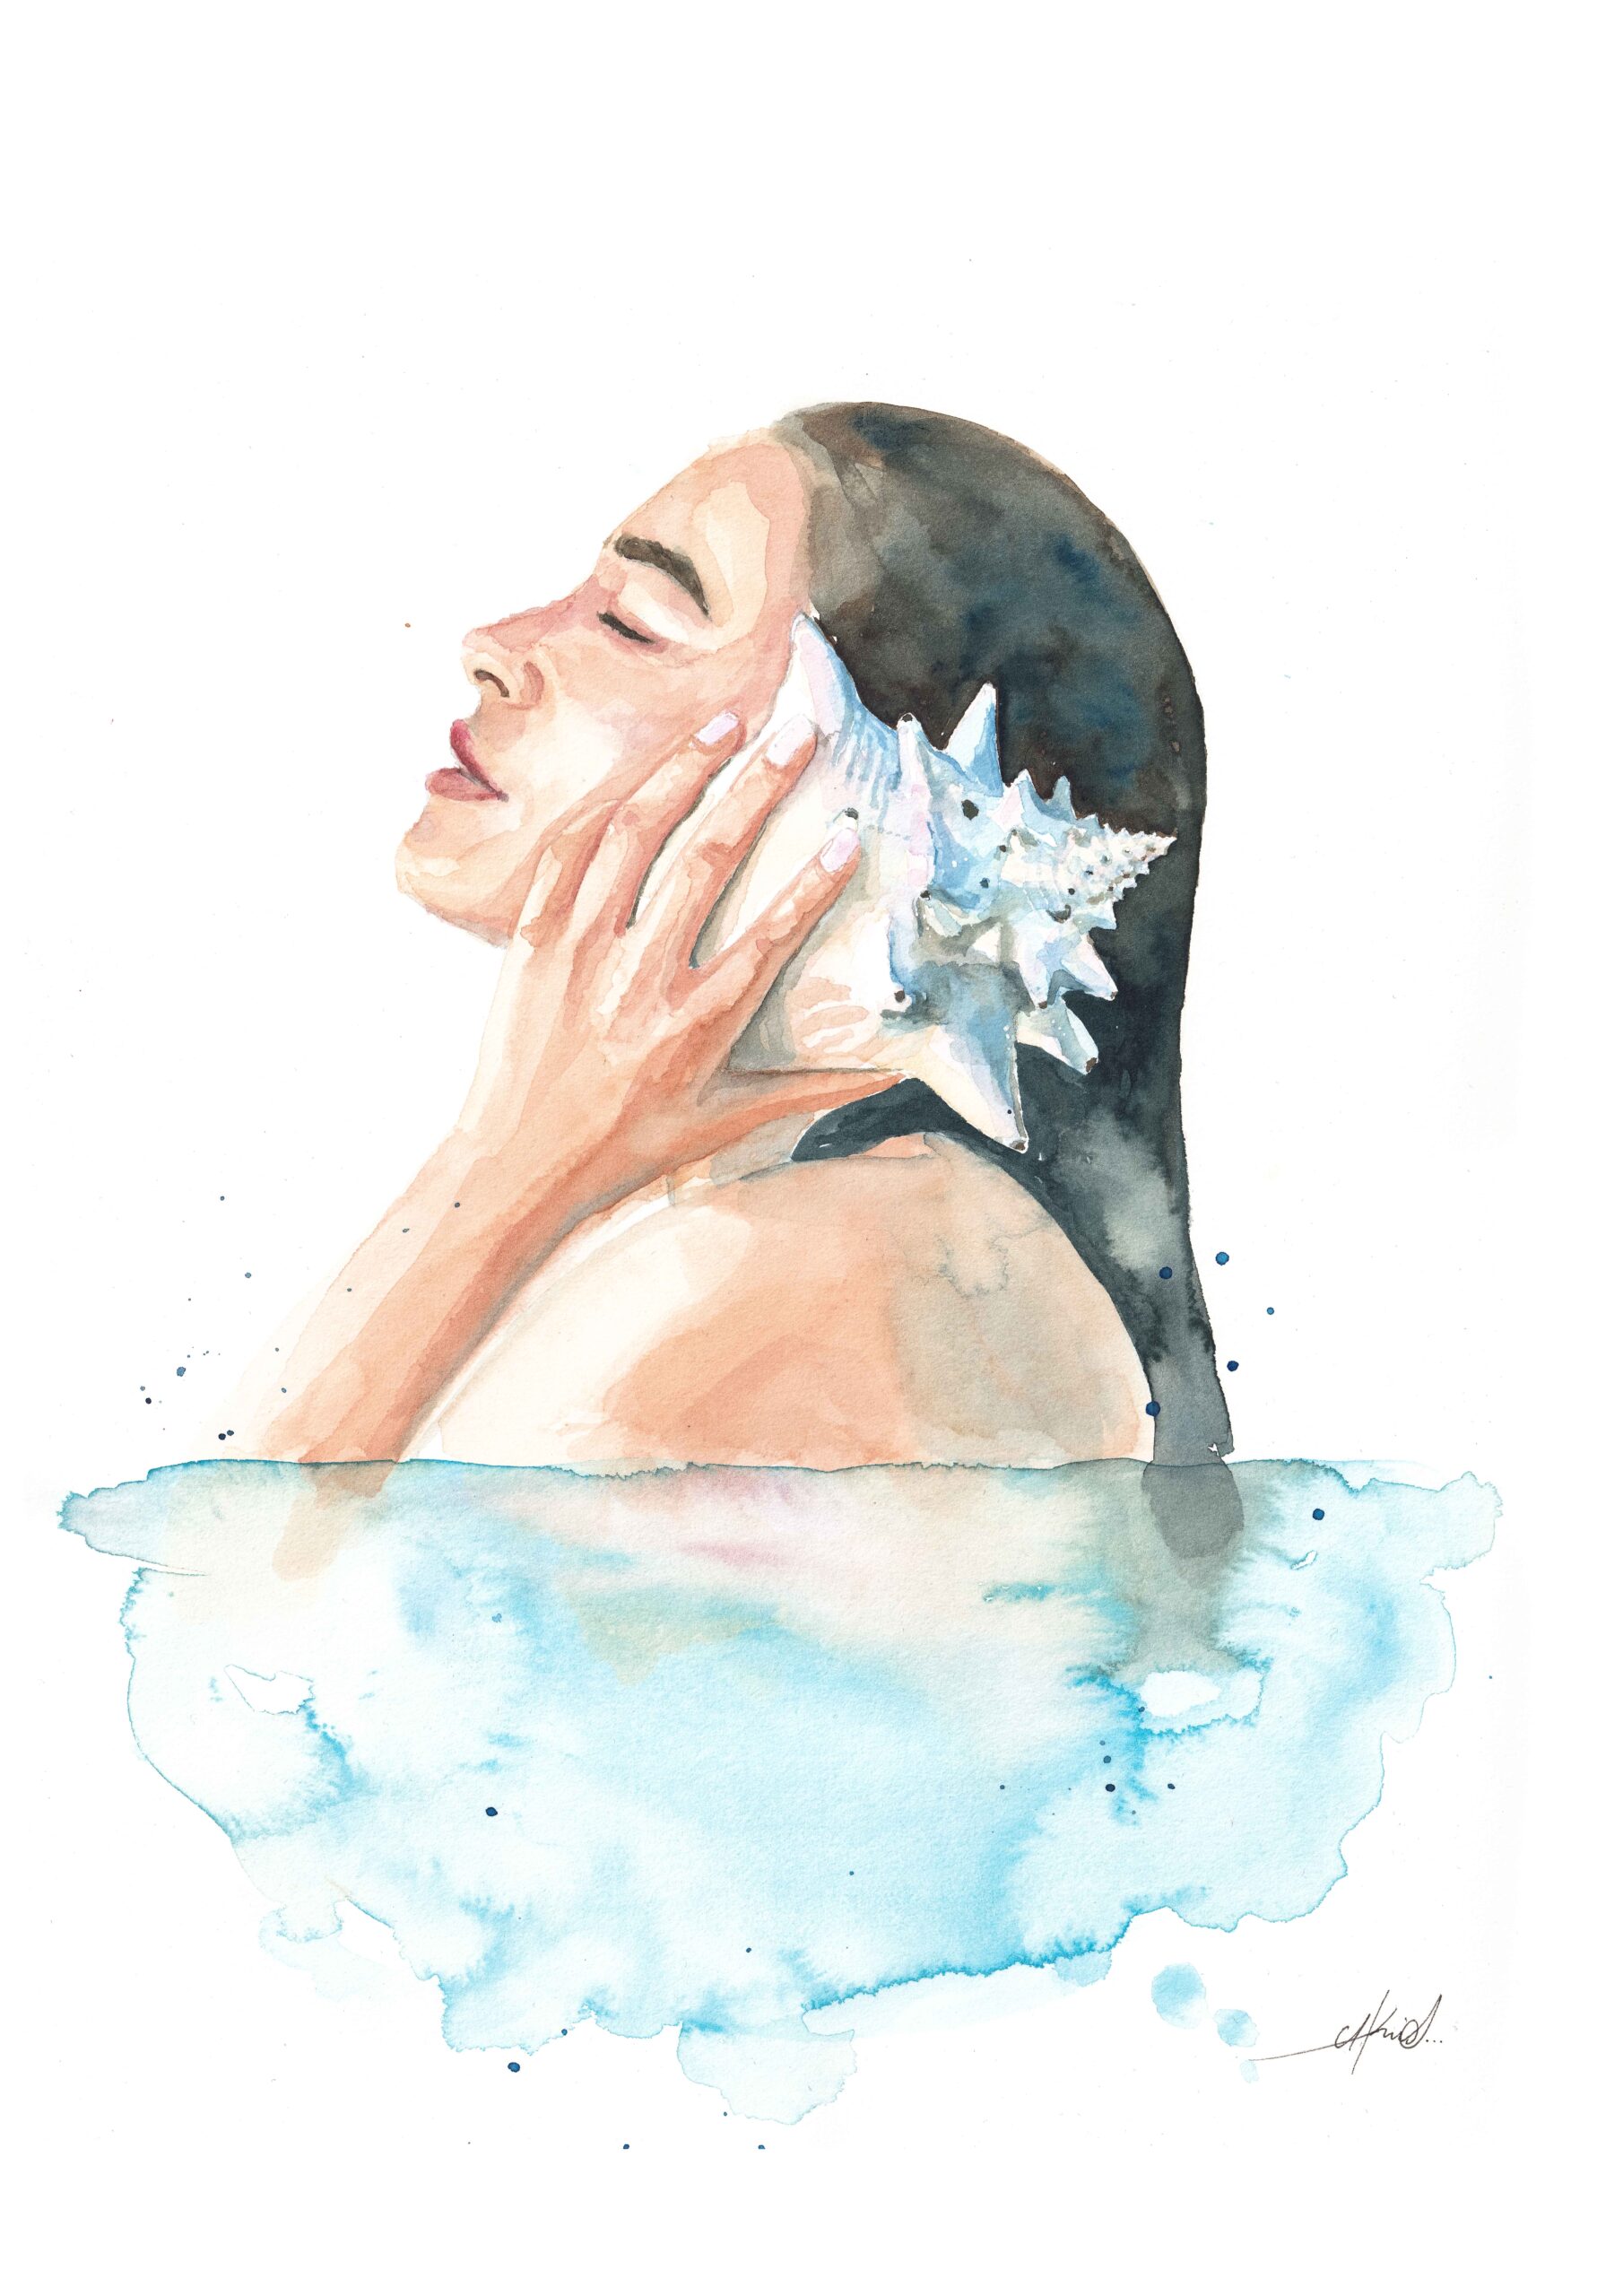 Retrato a acuarela de una mujer emergiendo del agua, vista de perfil, mientras escucha una caracola que sostiene con su mano.